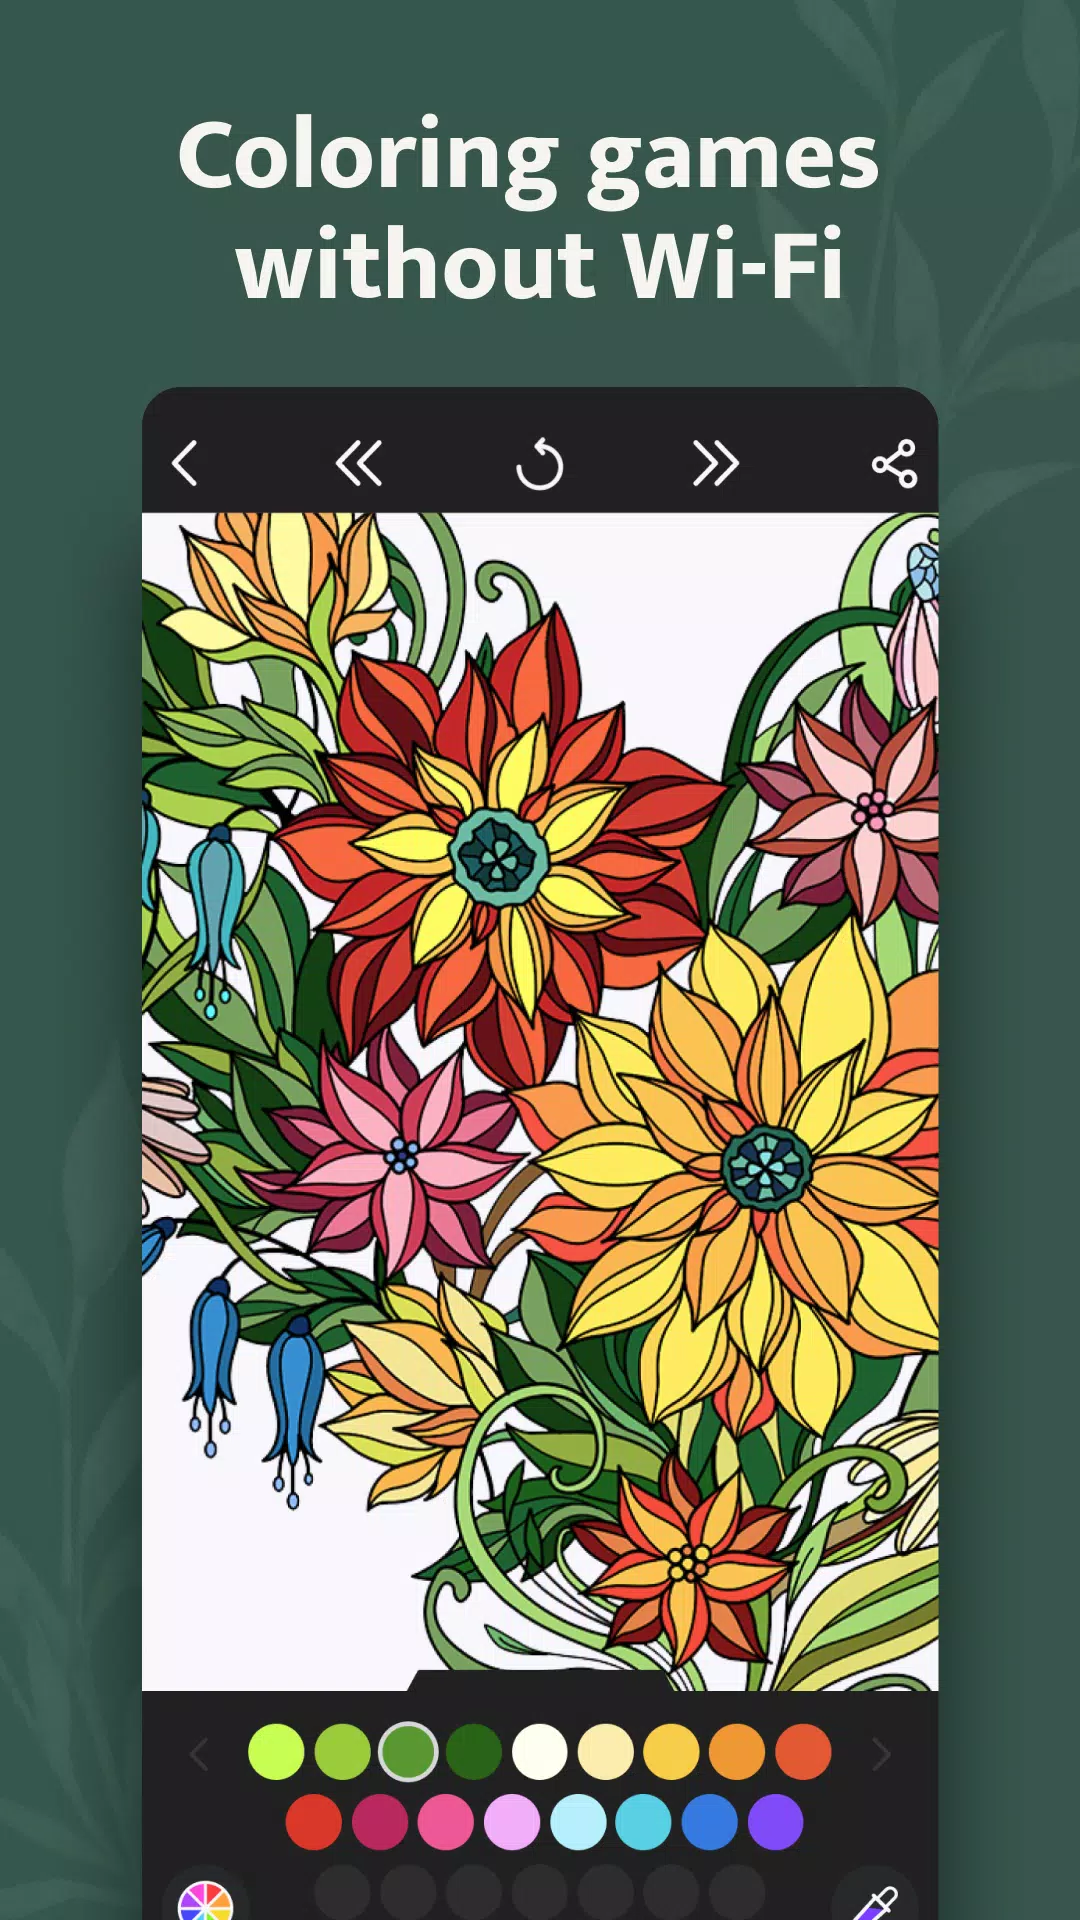 Download do APK de Livro para colorir Mandala para Android